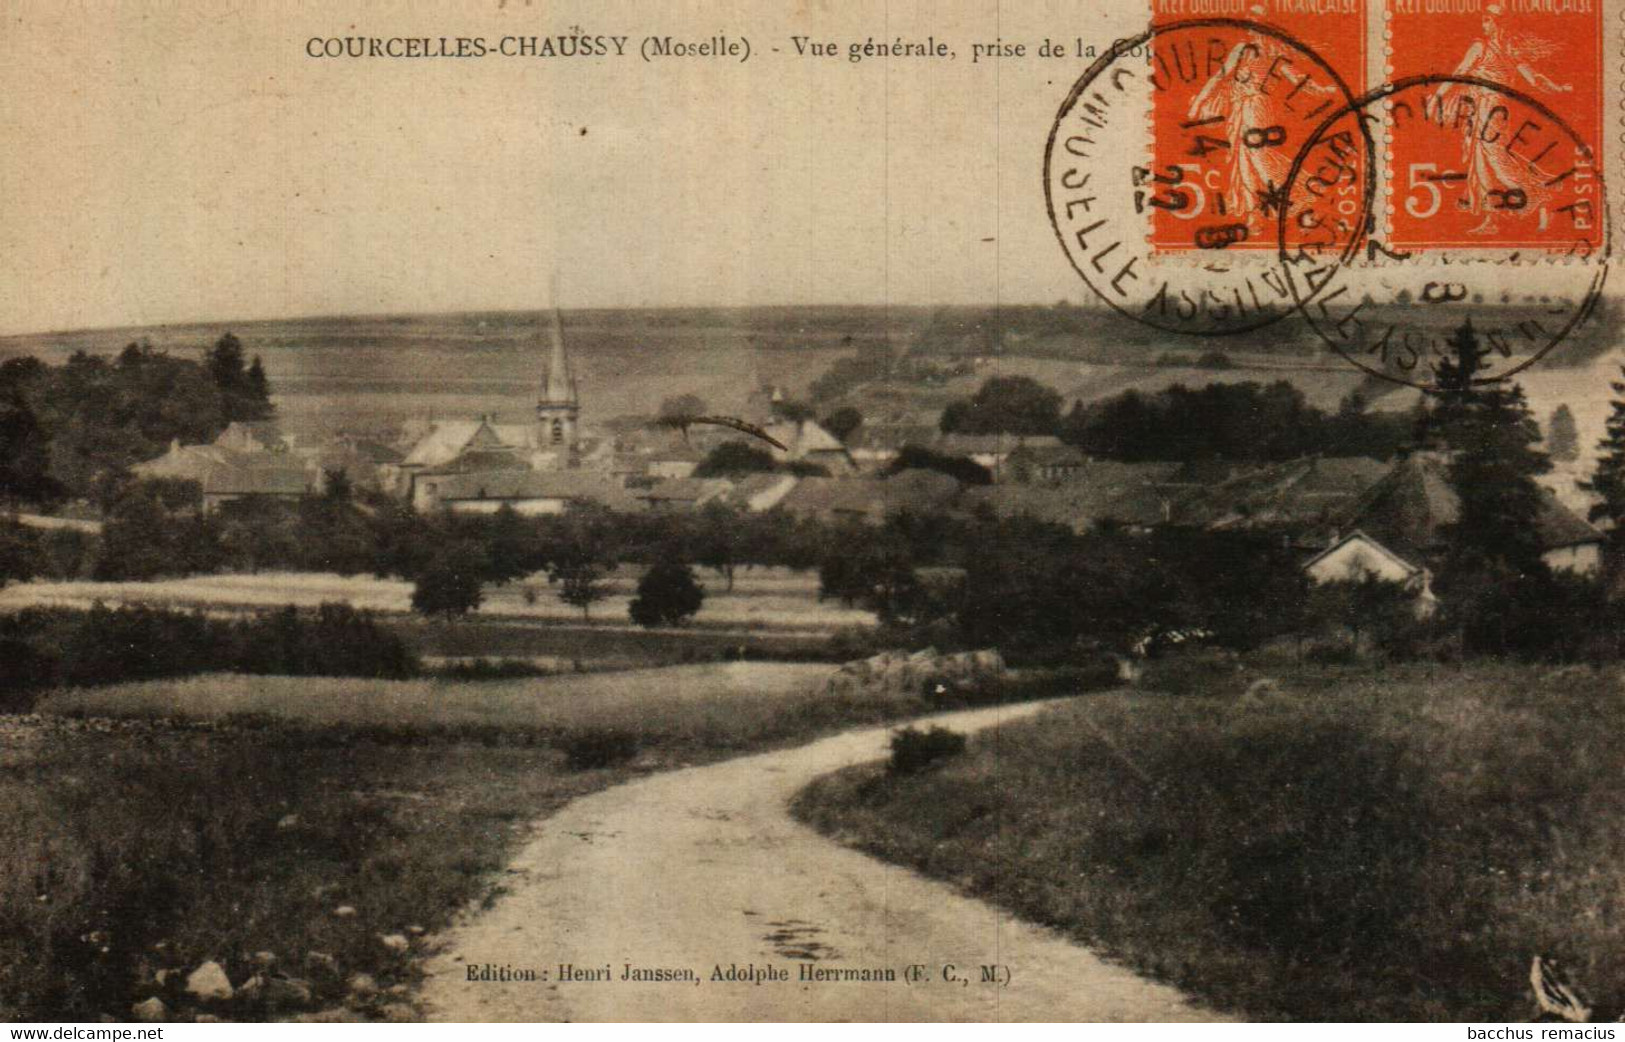 COURCELLES-CHAUSSY (Moselle) Vue Générale, Prise De La Cote - Metz Campagne